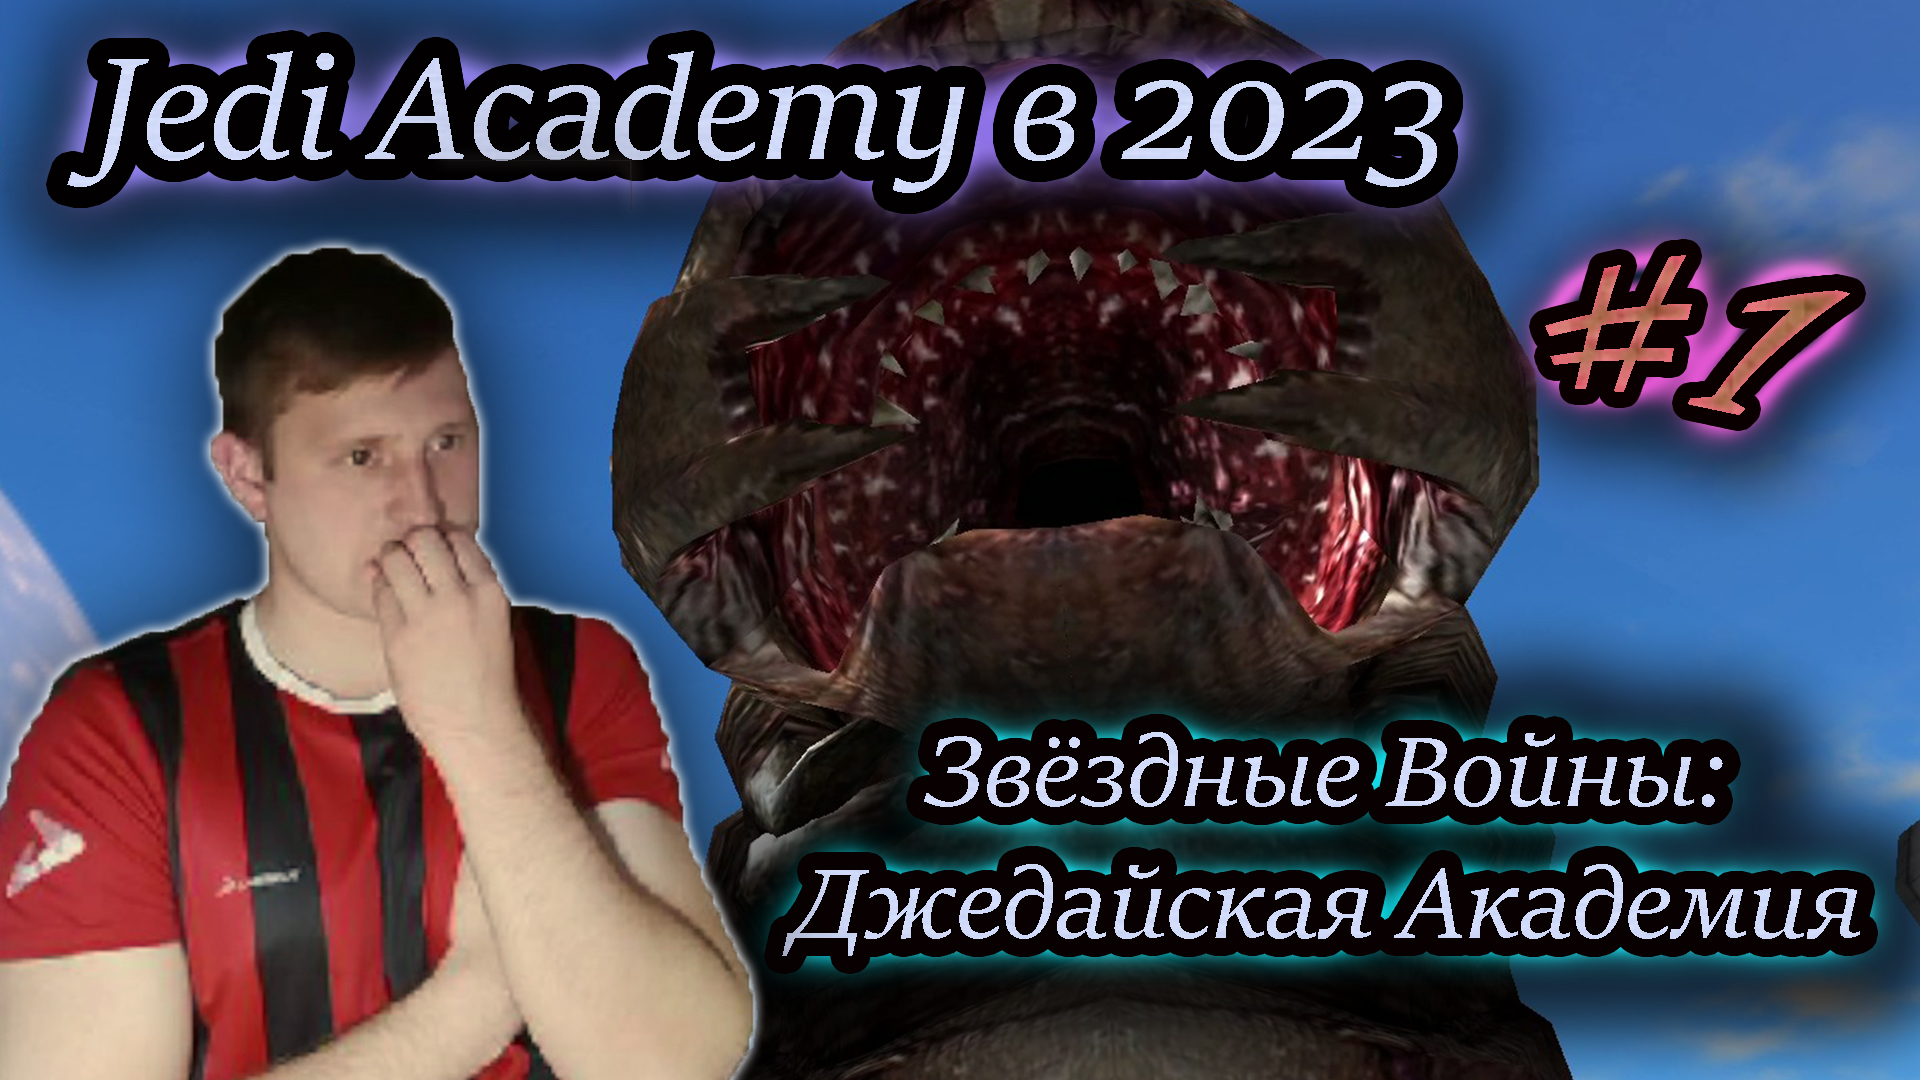 JEDI ACADEMY в 2023 ✔ Star Wars: Jedi Academy #1